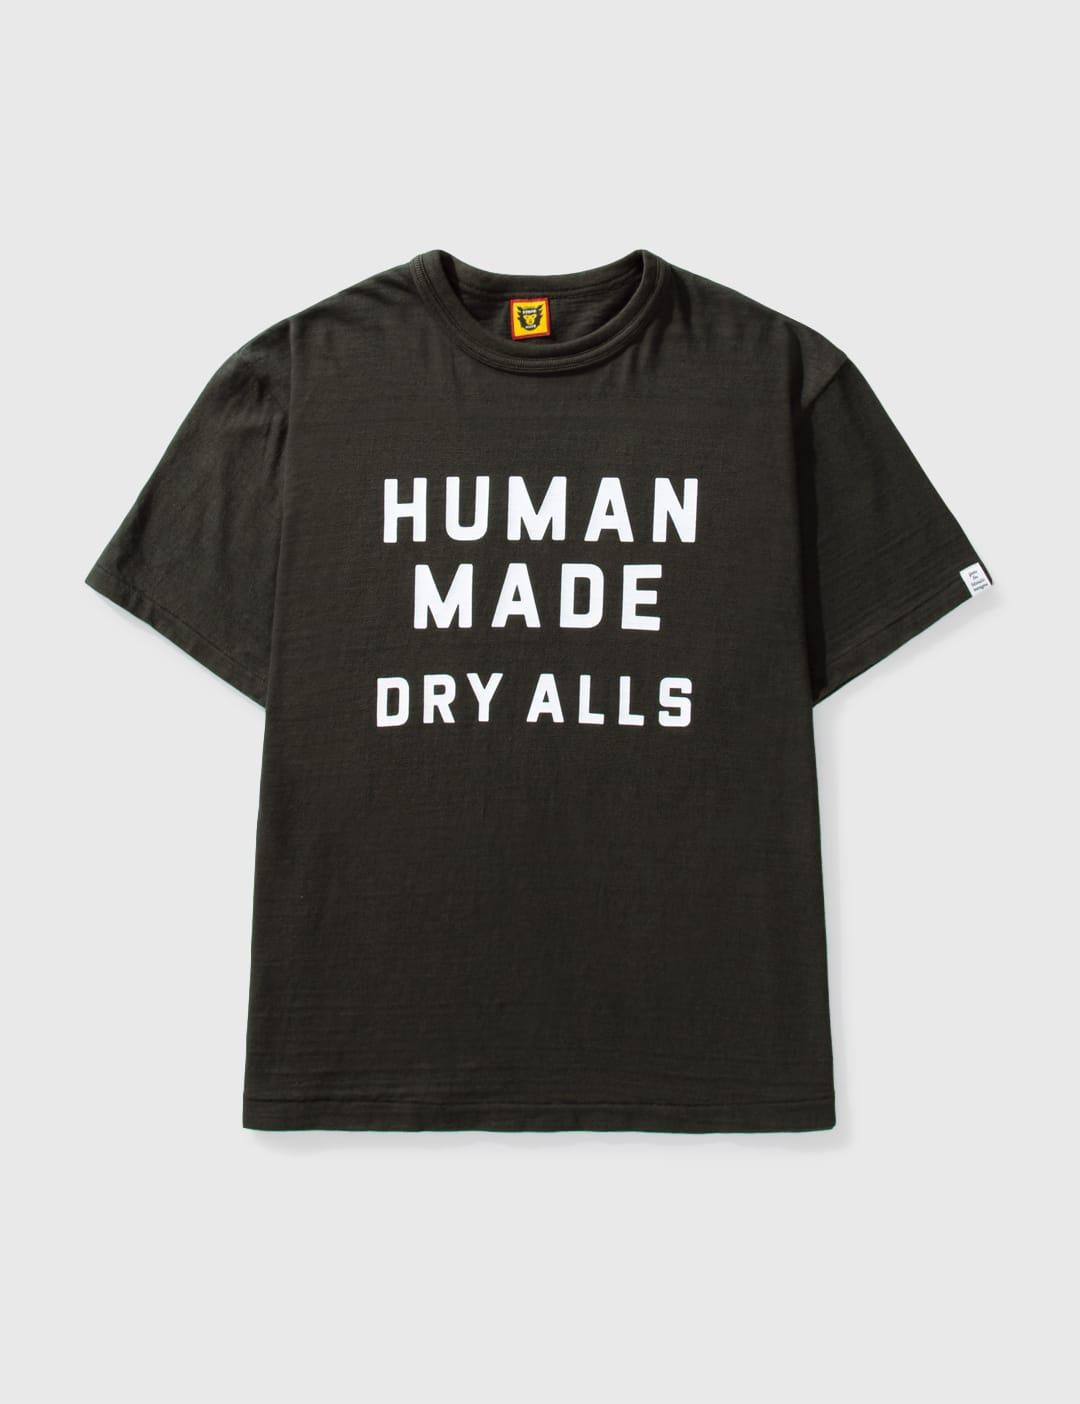 Human Made - ヘンリーネック 長袖 Tシャツ | HBX - ハイプビースト 